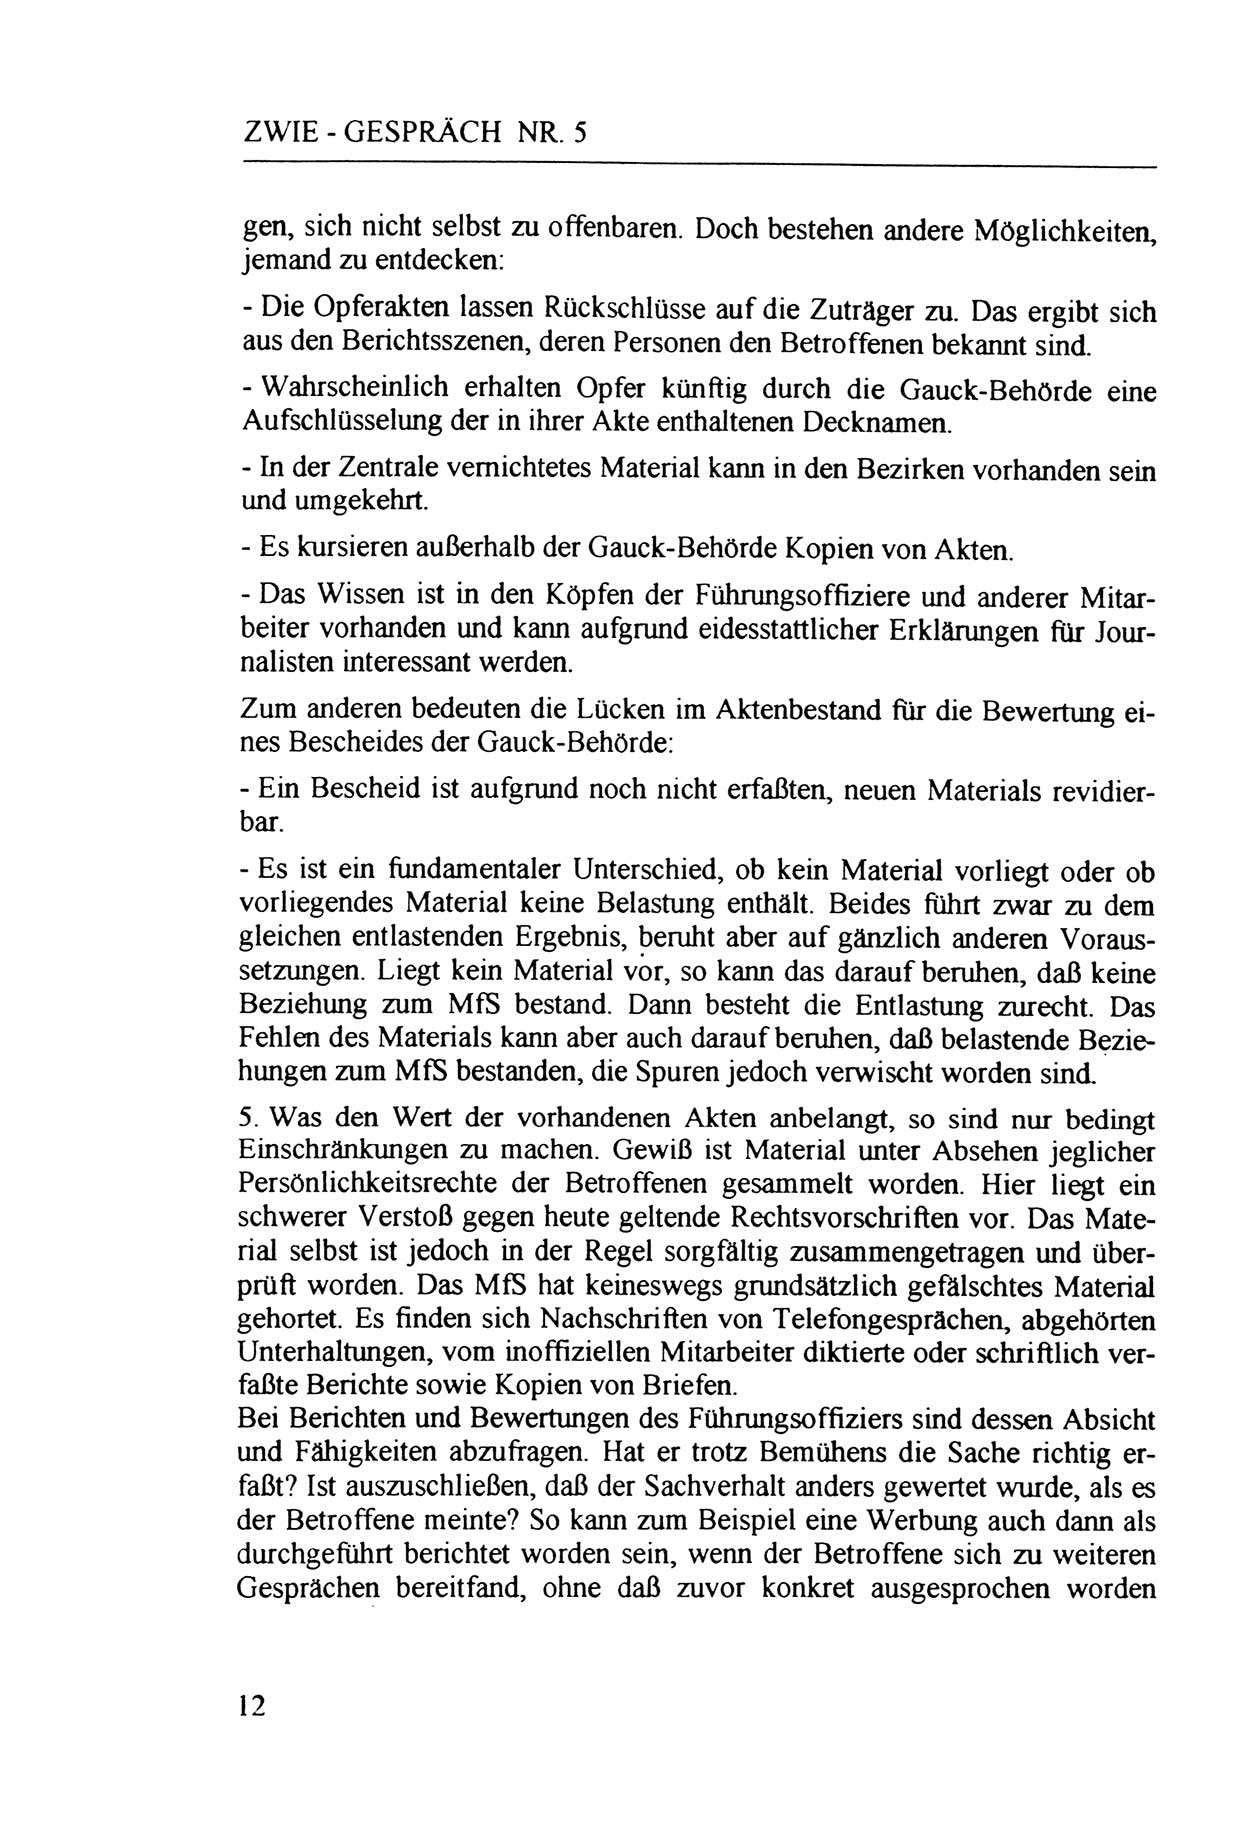 Zwie-Gespräch, Beiträge zur Aufarbeitung der Staatssicherheits-Vergangenheit [Deutsche Demokratische Republik (DDR)], Ausgabe Nr. 5, Berlin 1991, Seite 12 (Zwie-Gespr. Ausg. 5 1991, S. 12)